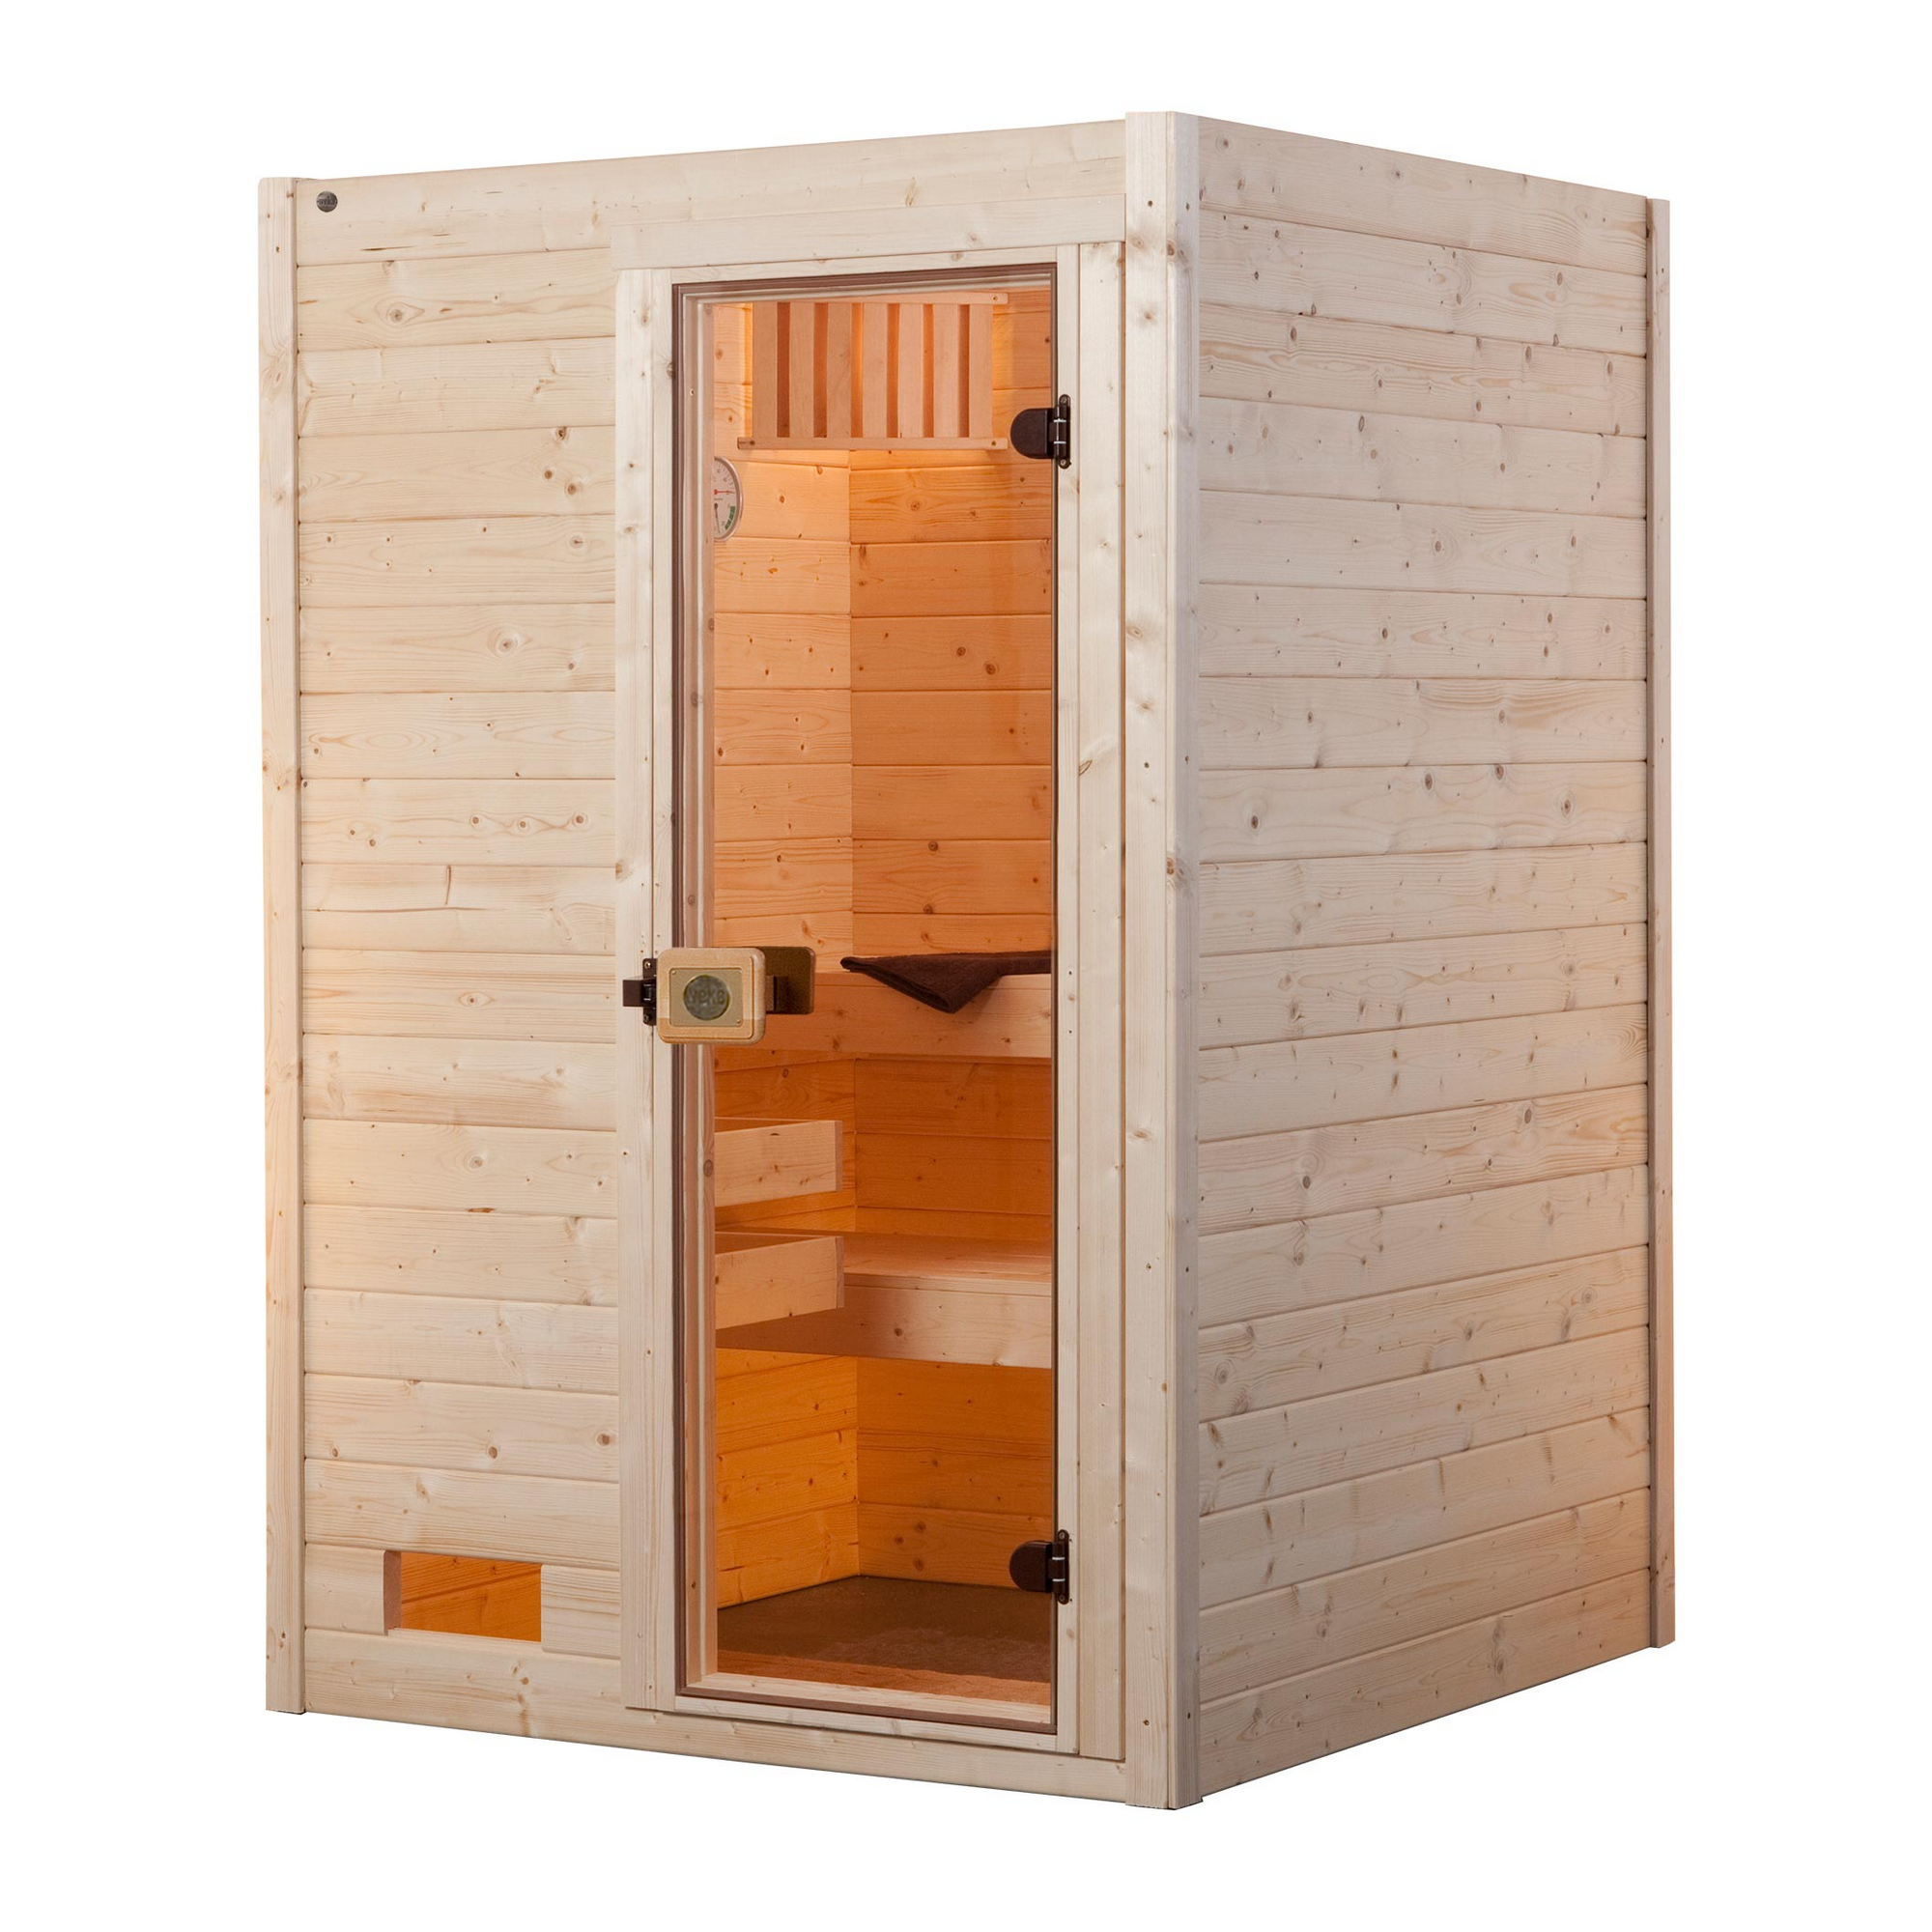 Massivholz-Sauna 'Valida 1' mit 4,5 kW BioS-Ofenset, Steuerung, Glastür 137 x 137 x 203,5 cm + product picture